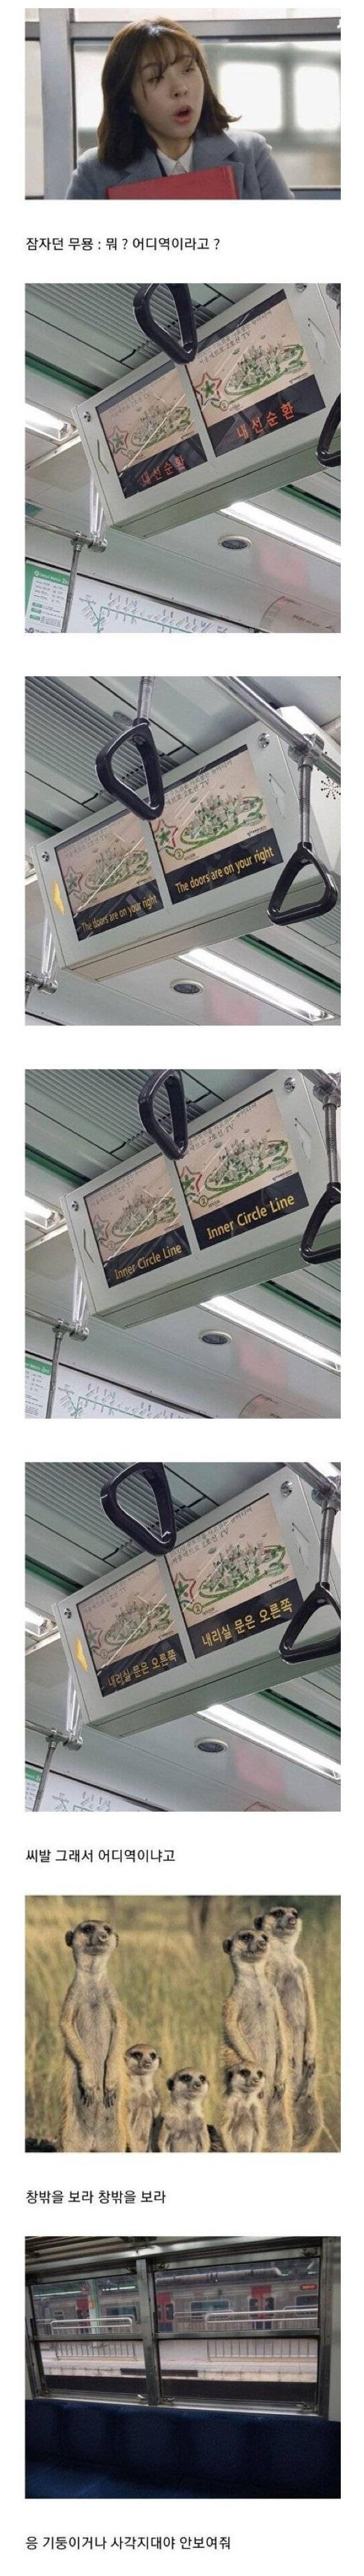  서울 지하철 공감